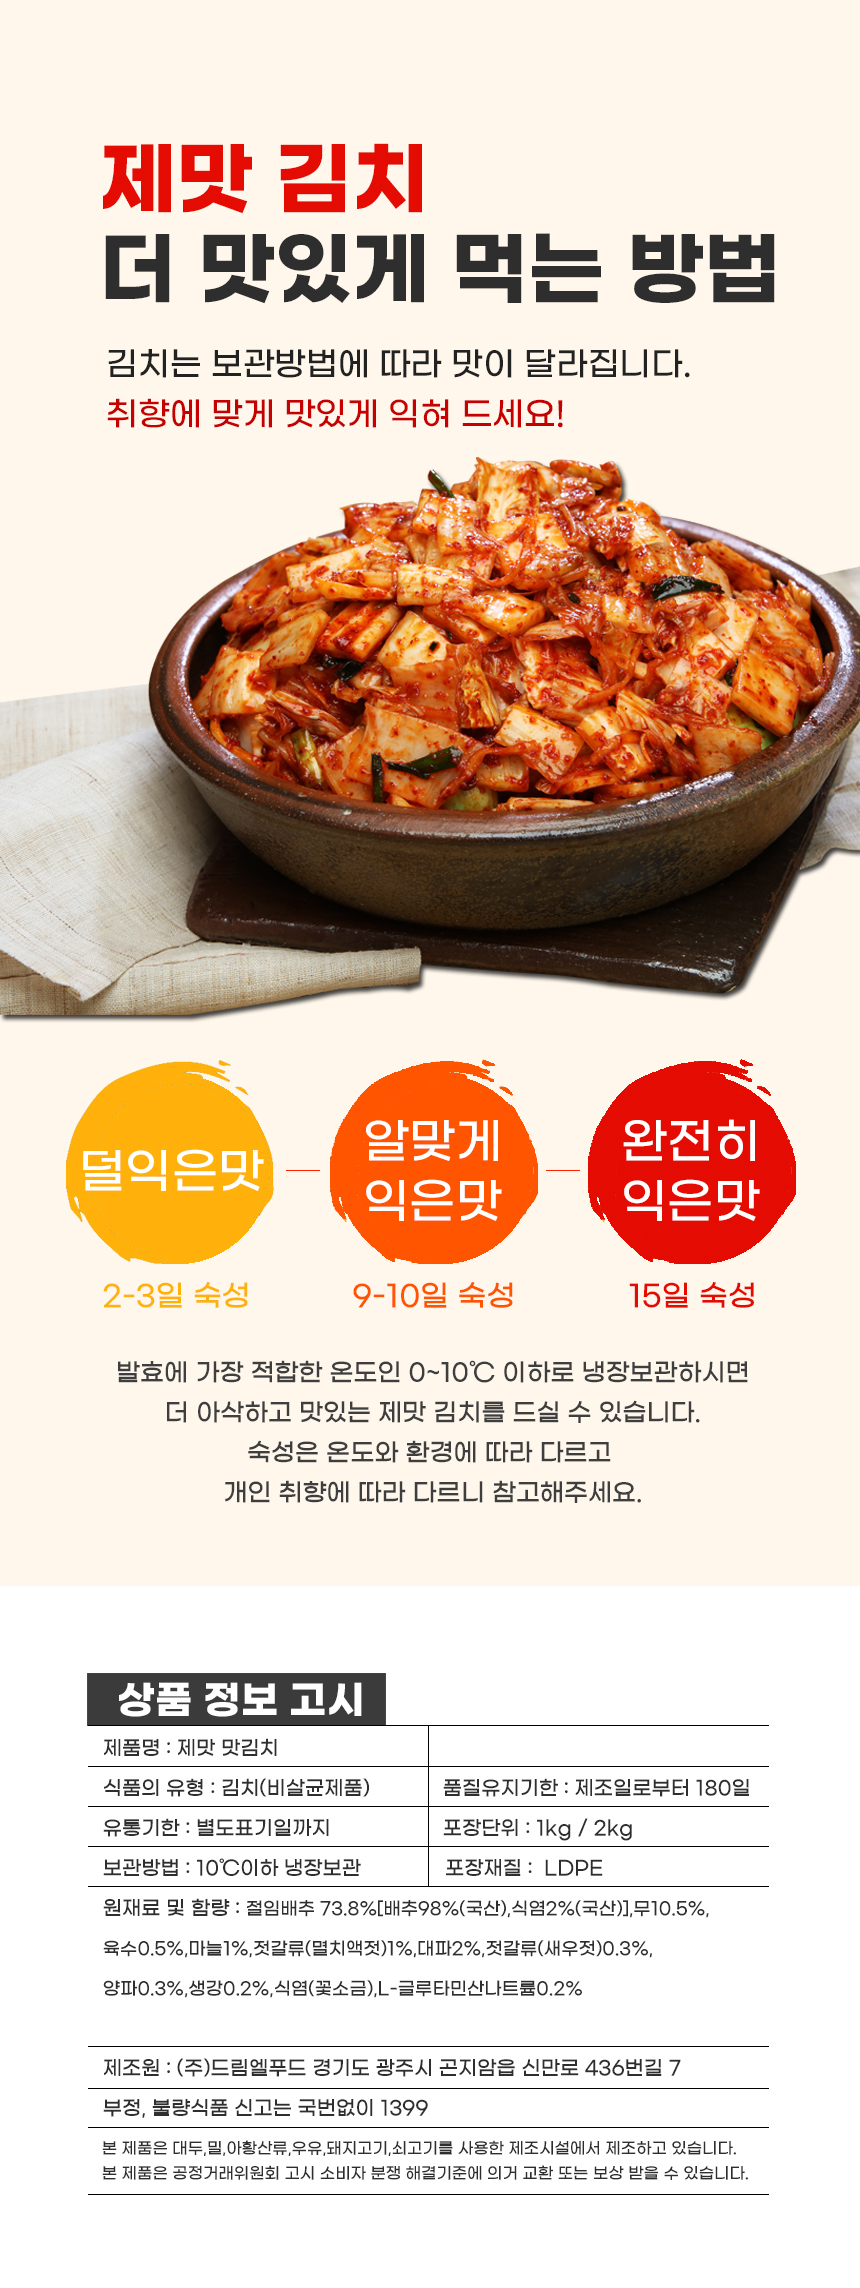 韓國食品-[일품] 맛김치 1kg